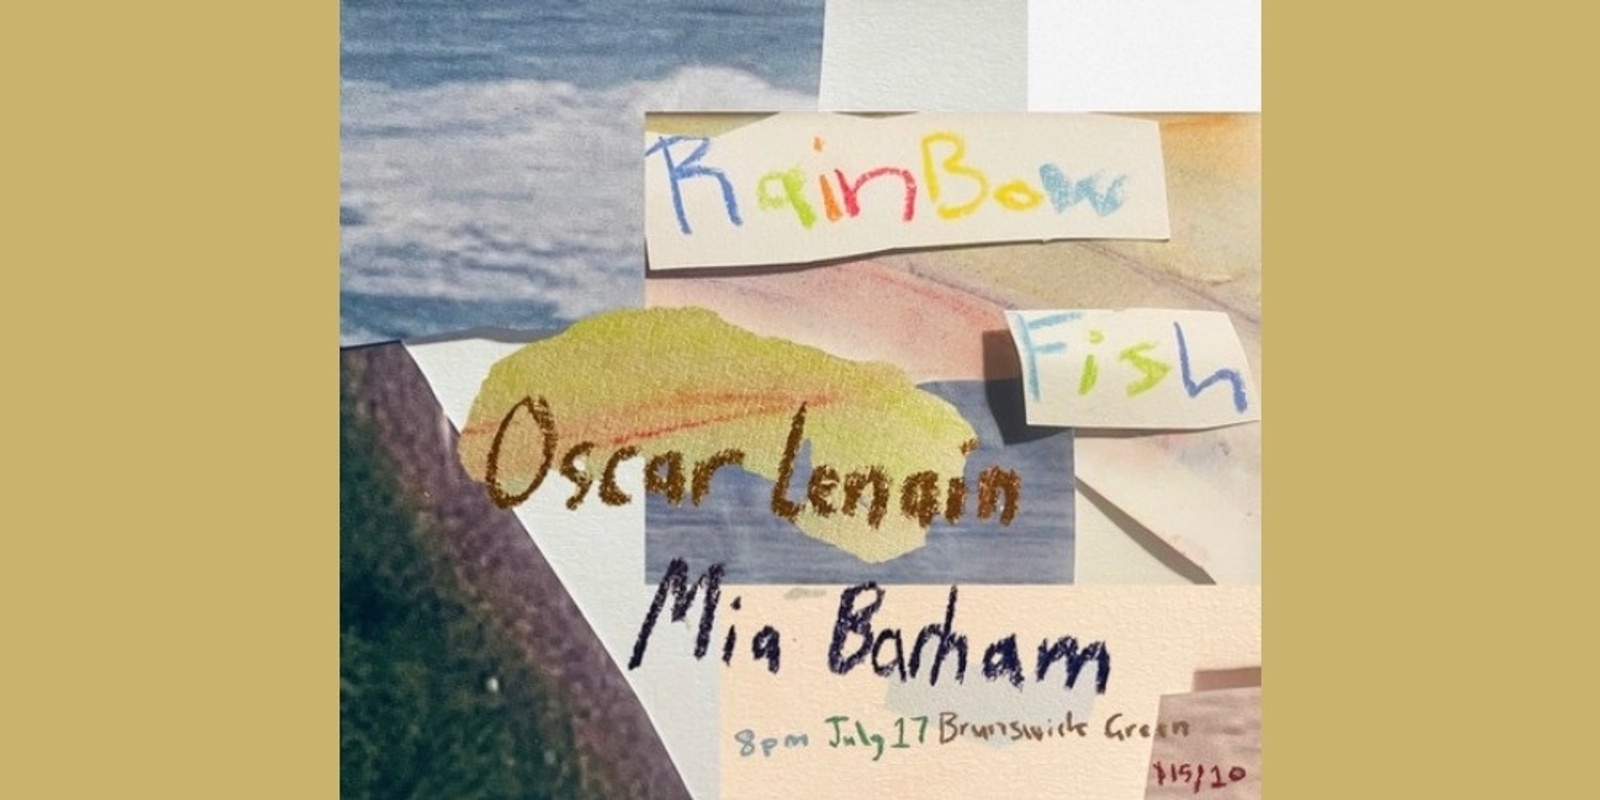 Banner image for Rainbow Fish, Oscar Lenain, Mia Barham at The Brunswick Green